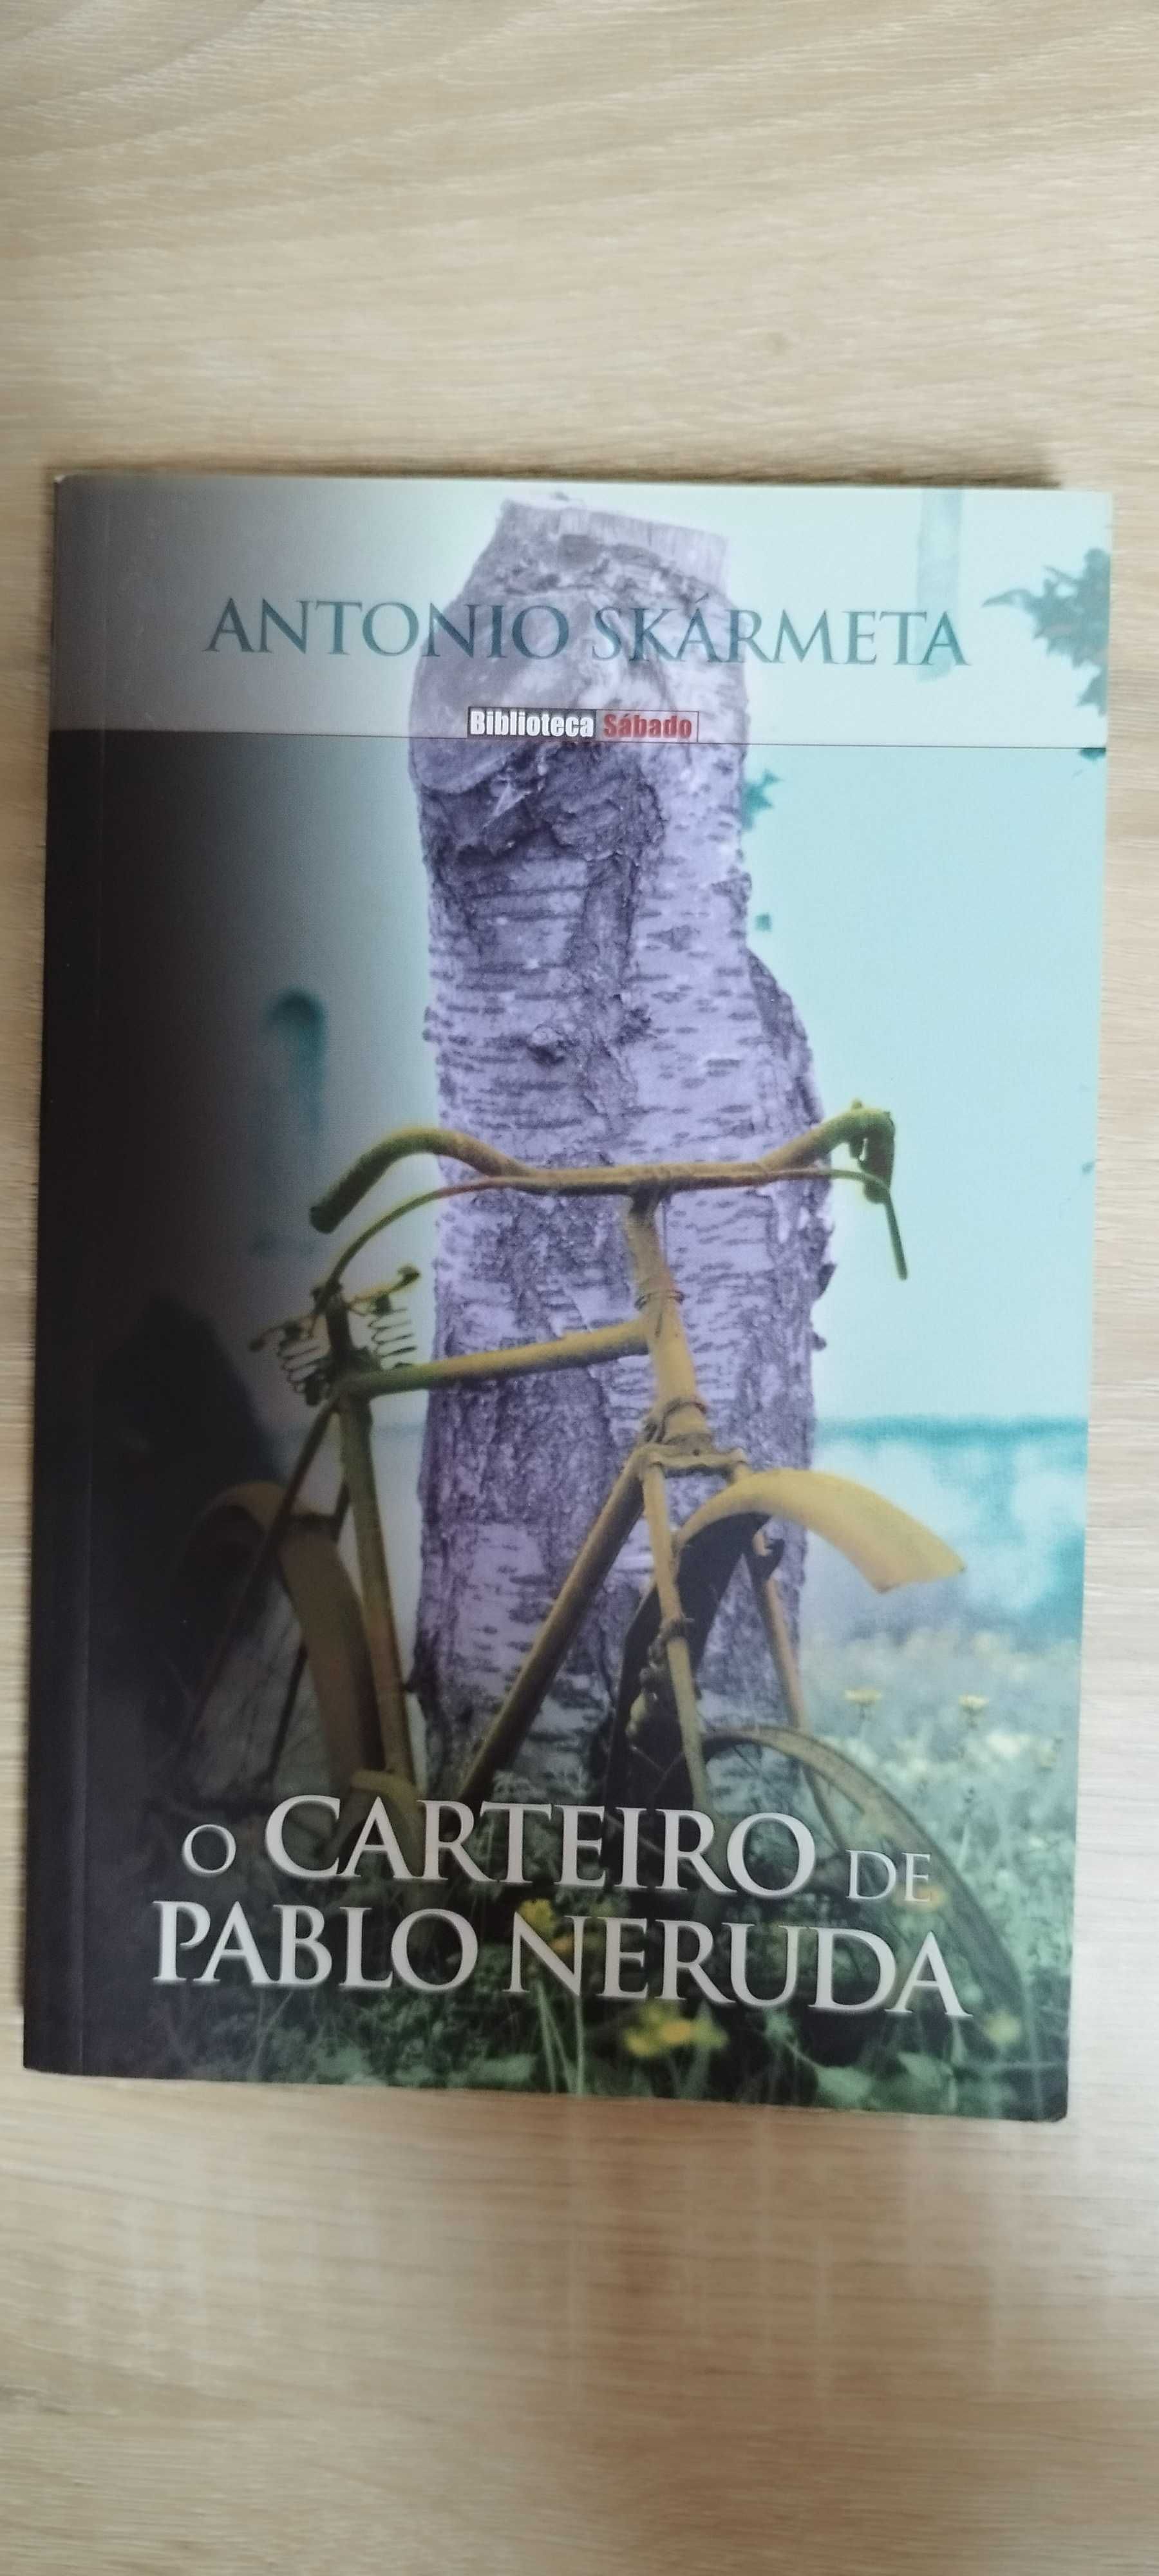 Antonio Skarmeta - O Carteiro de Pablo Neruda